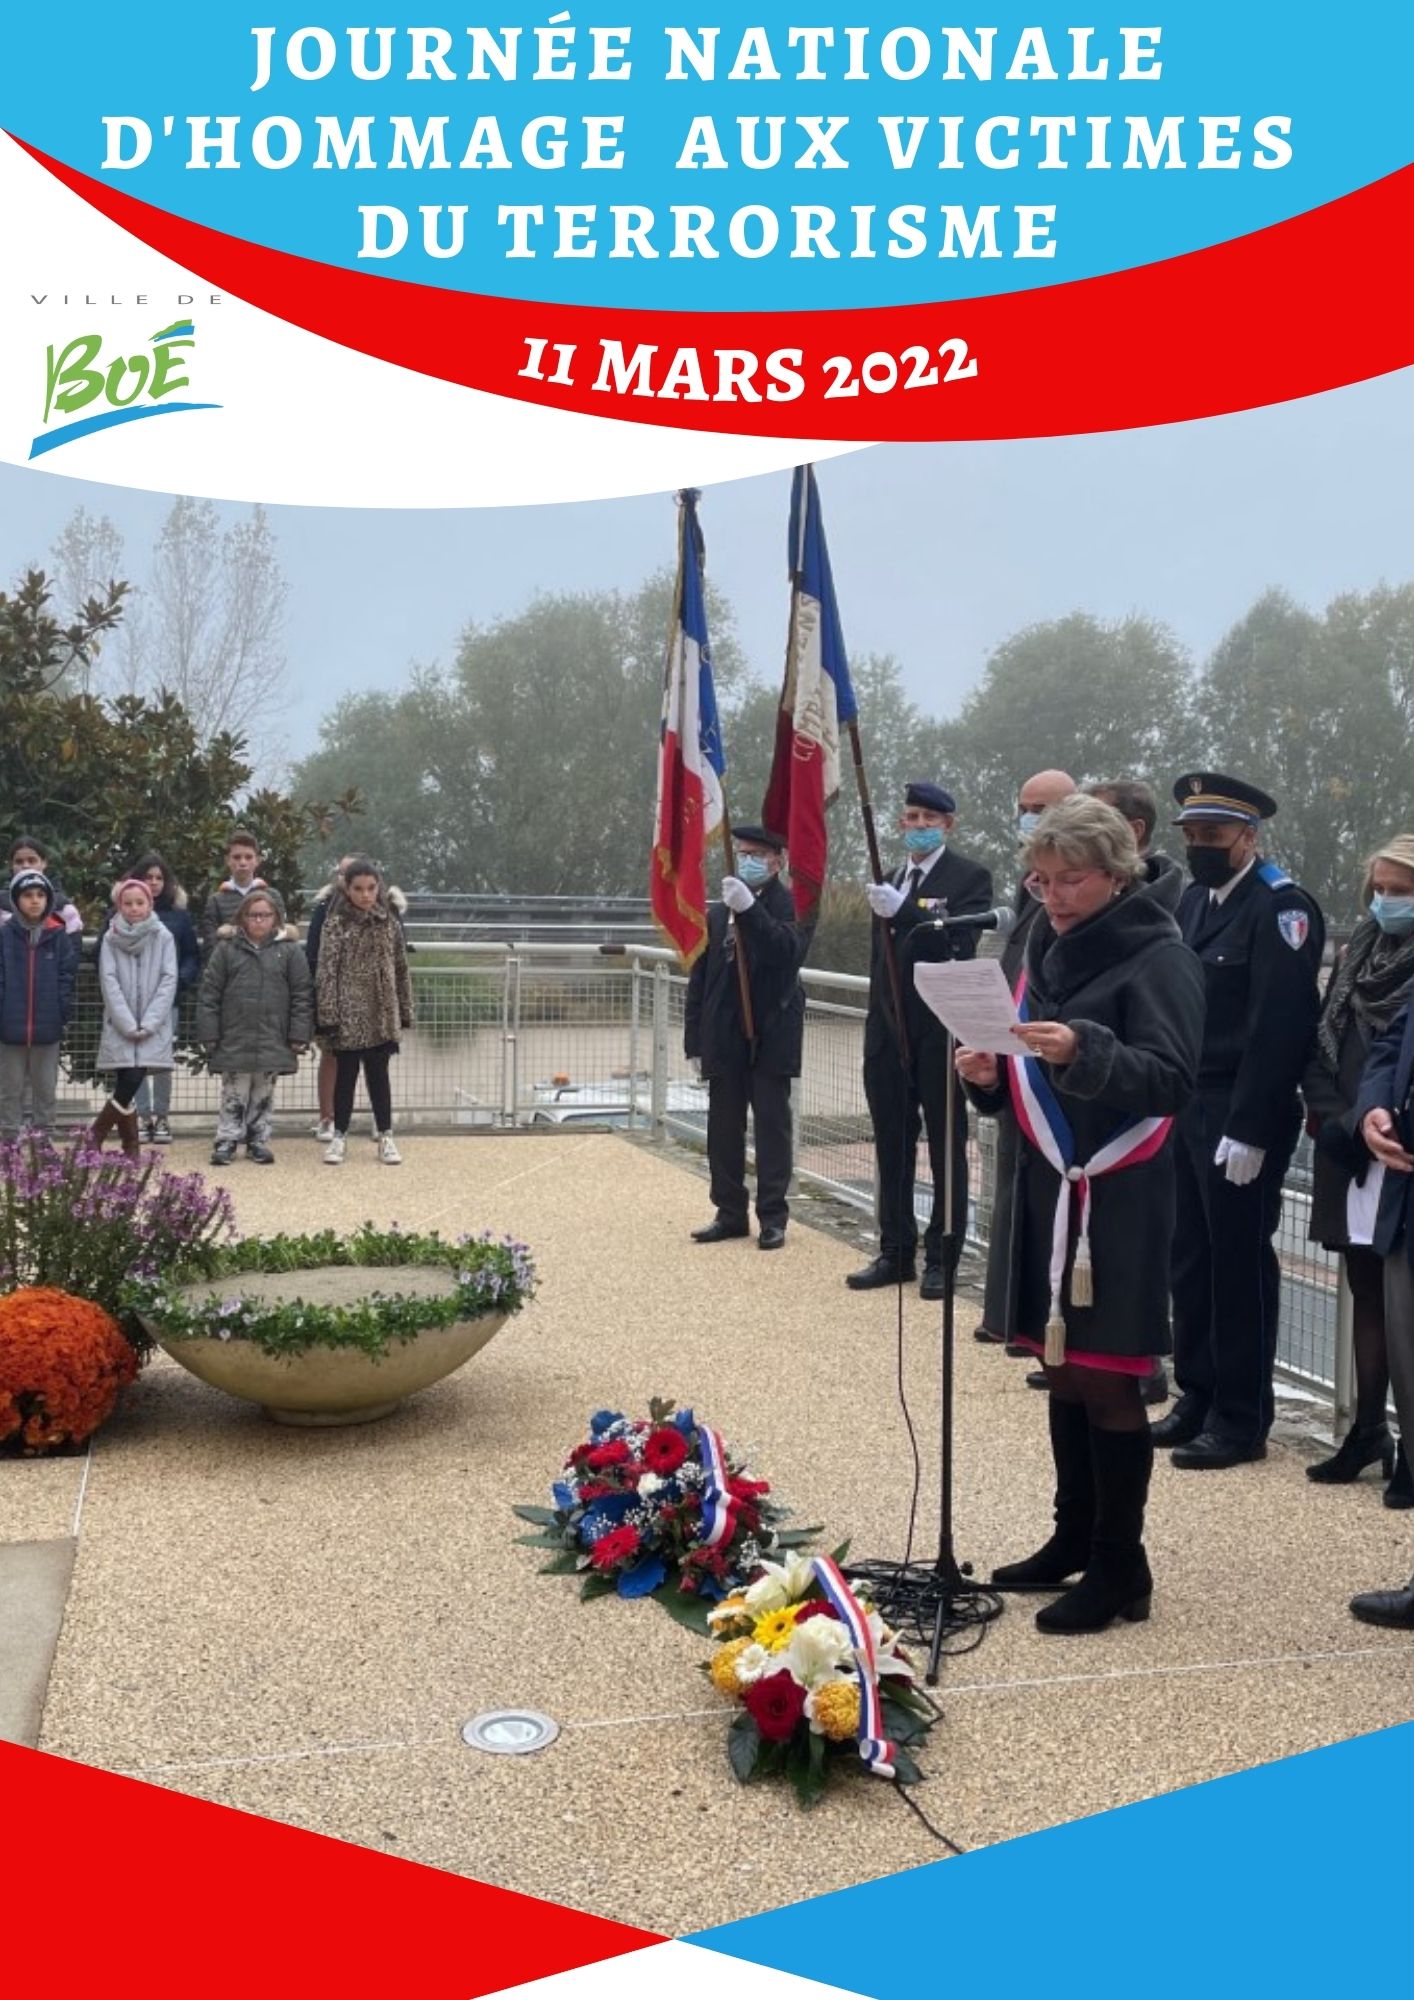 La Ville de Boé s’associe à la journée nationale d’hommage aux victimes du terrorisme